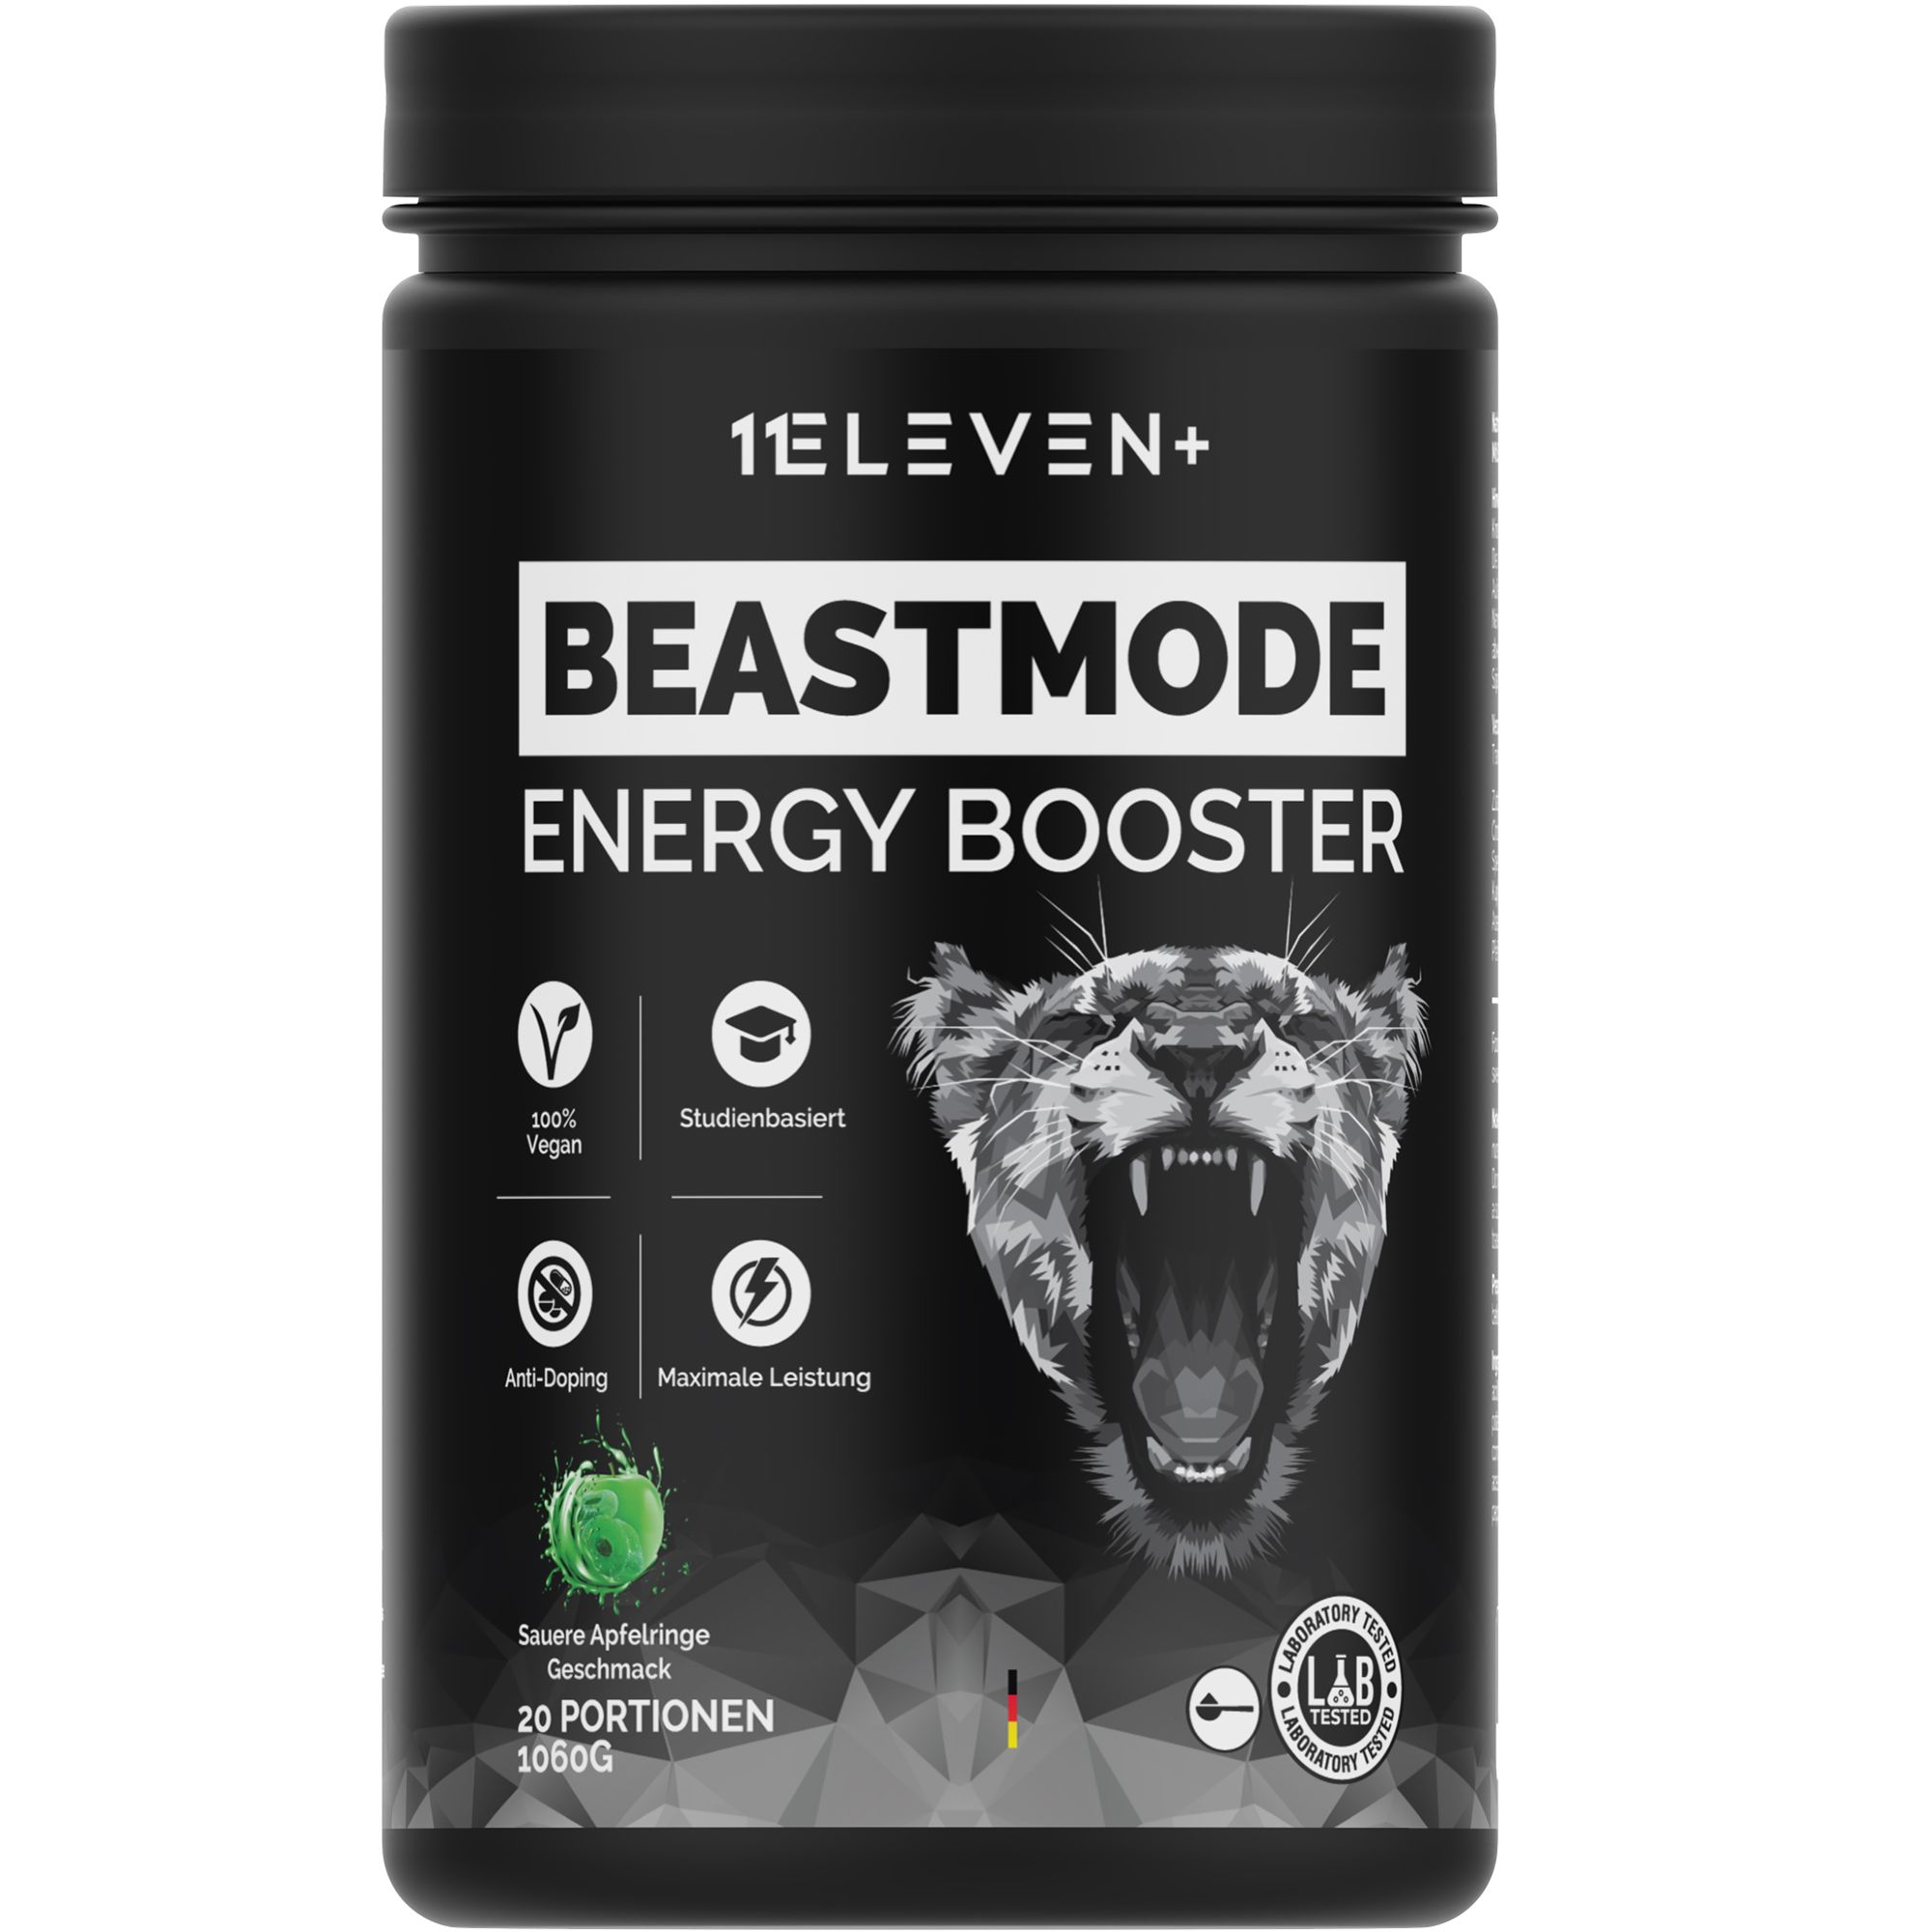 11Eleven+ Beastmode, Trainingsbooster für mehr Fokus und mehr Leistung, Geschmack Saure Apfelringe